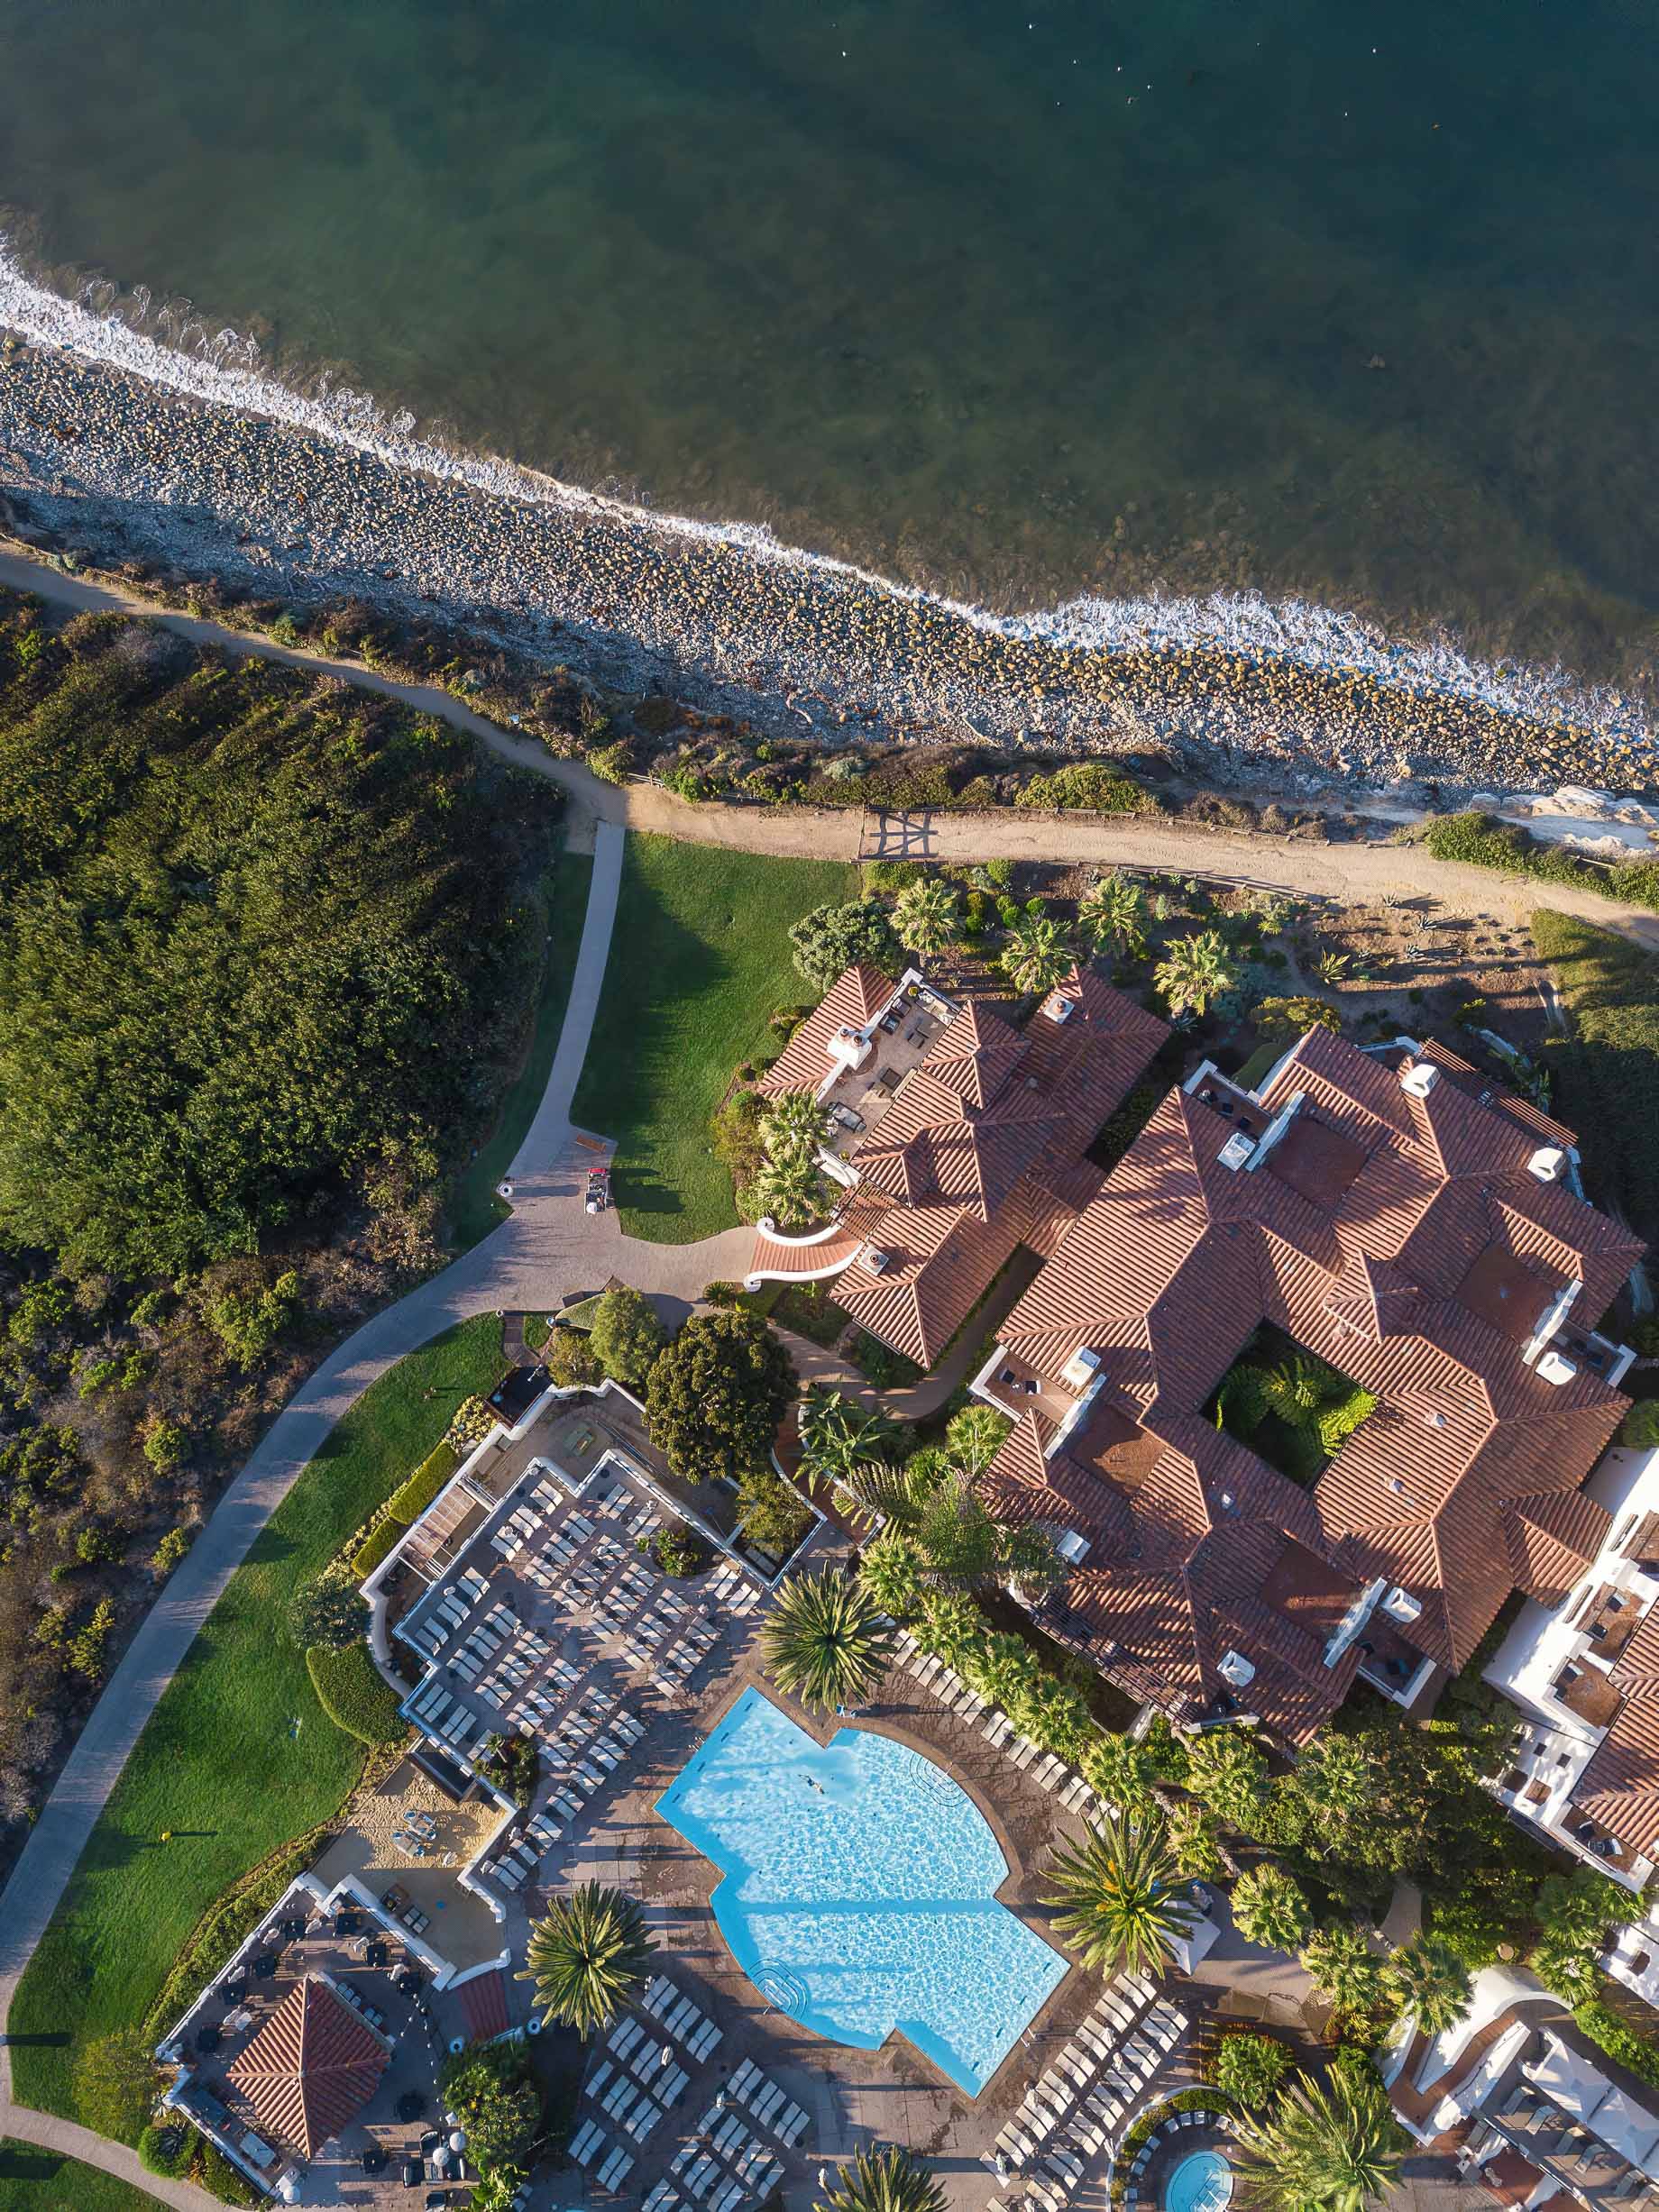 The Ritz-Carlton Bacara, Santa Barbara Resort - Santa Barbara, CA, USA - Resort Aerial Overhead Pool View